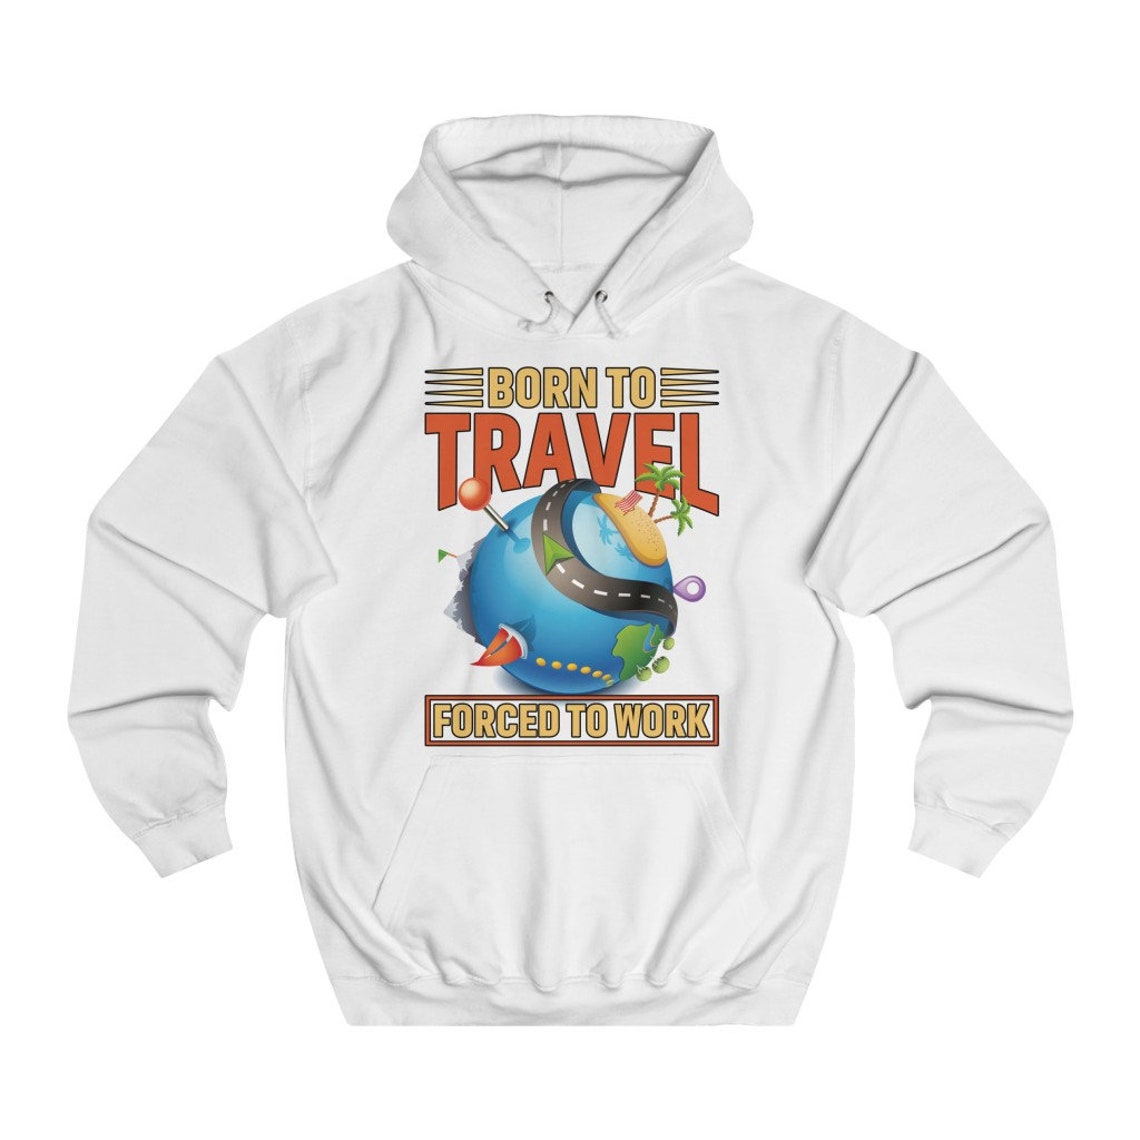 my dream store travel hoodie